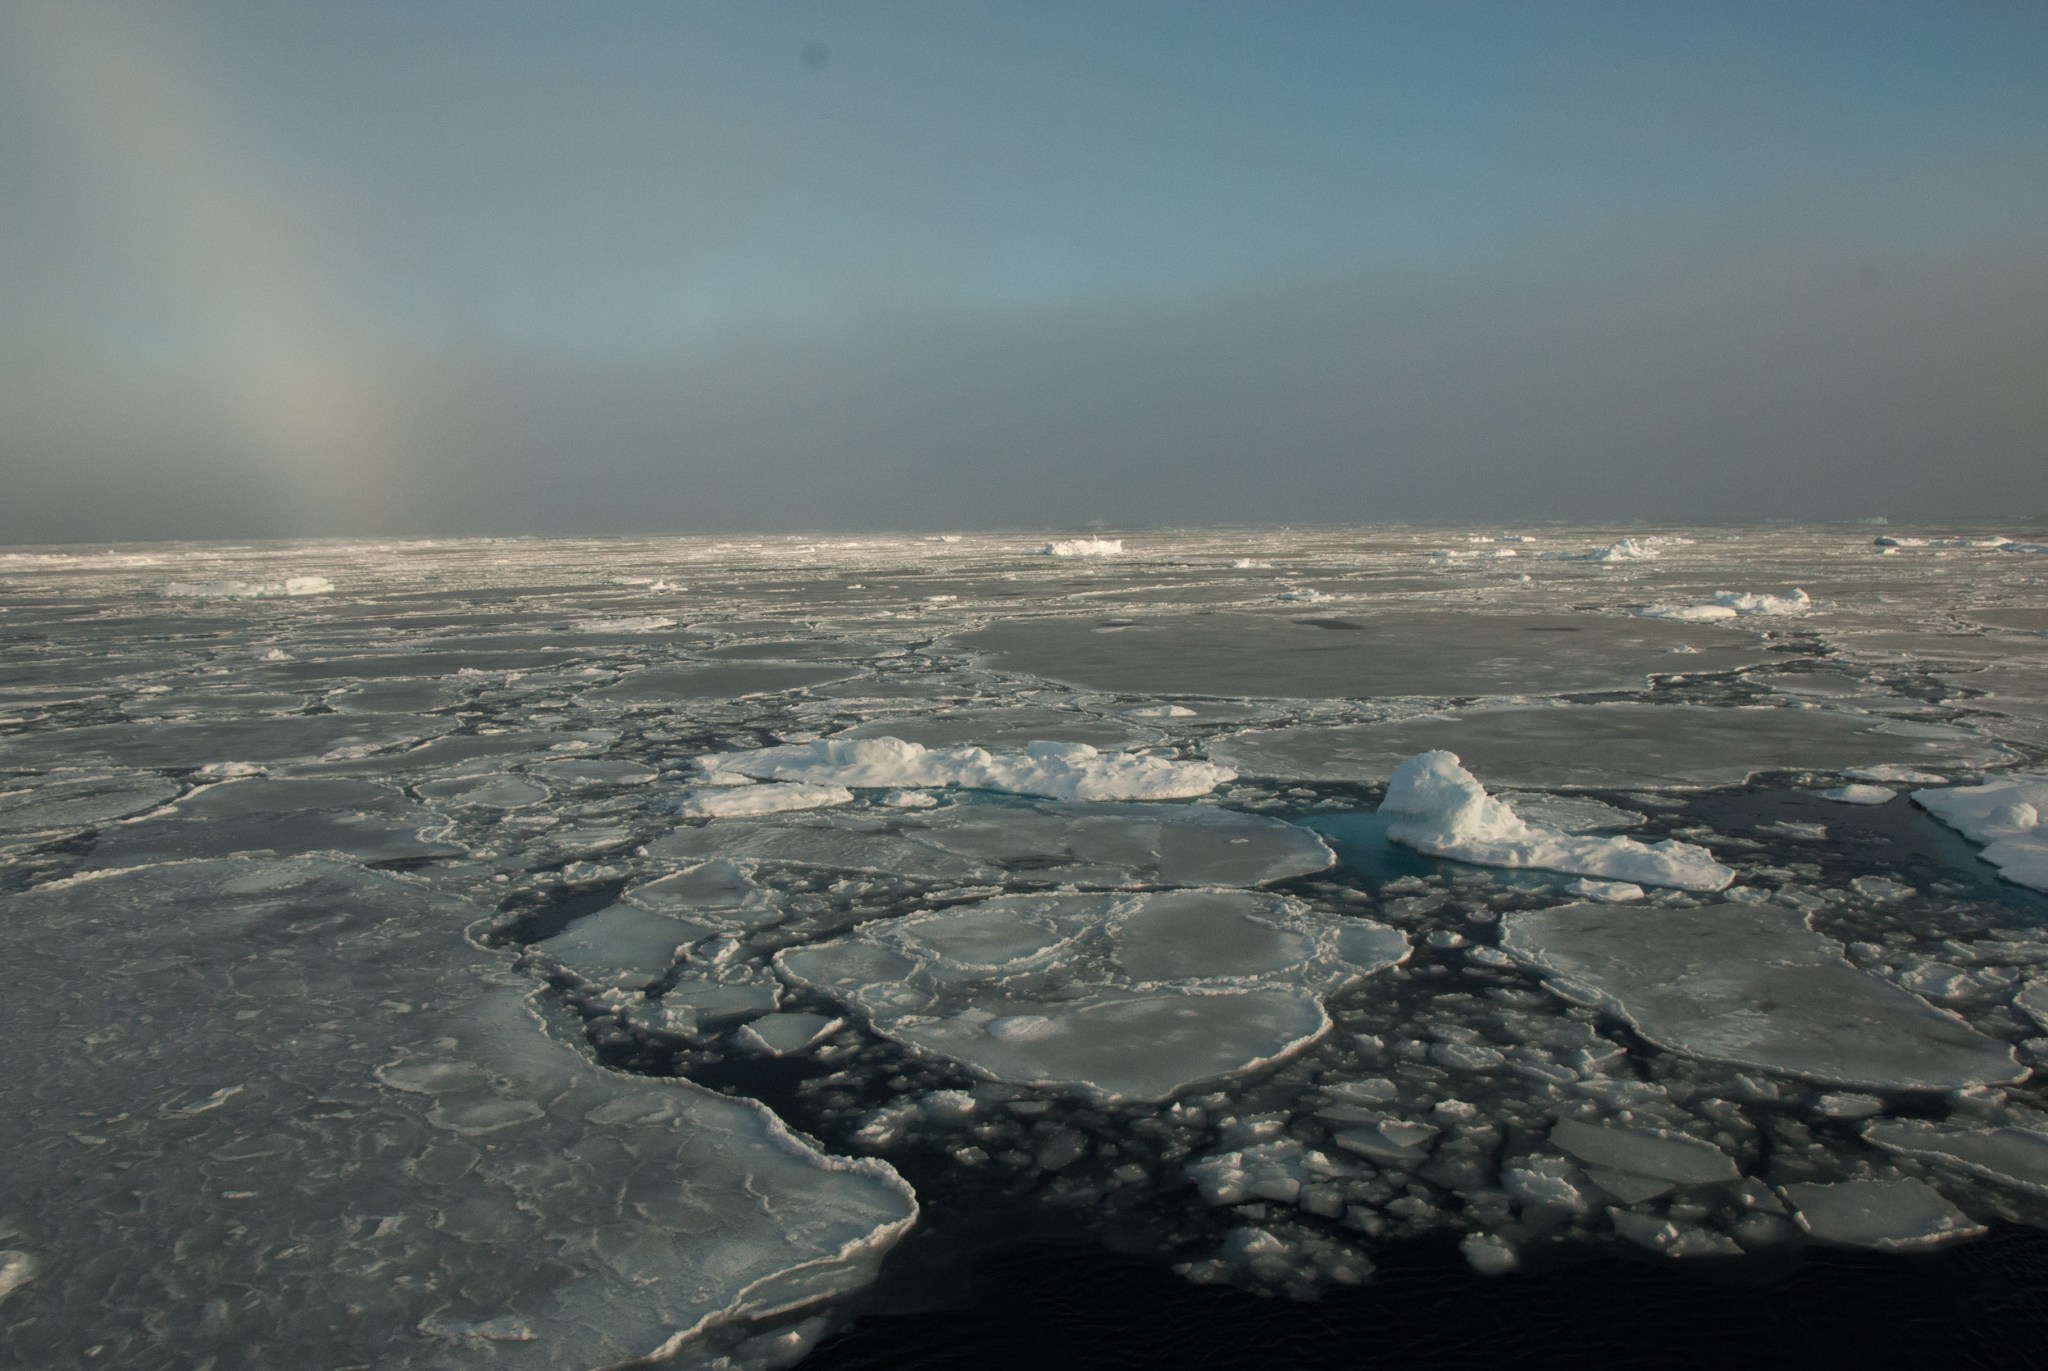 sea ice with sundogs near the horizon